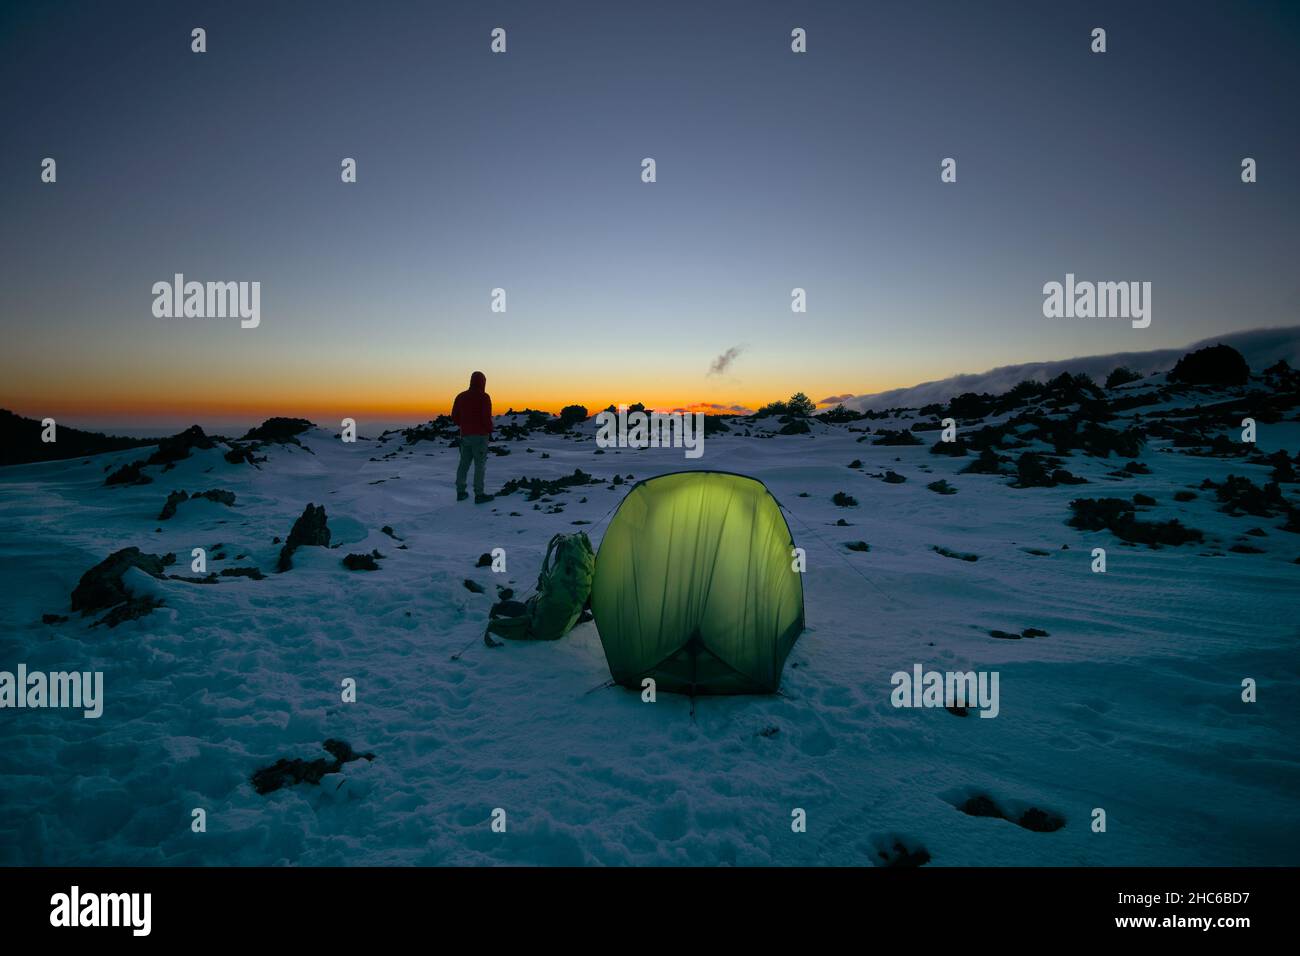 Wild Camping auf dem Schnee des Ätna Mountain man und beleuchtete Zelt bei  Sonnenuntergang, Sizilien Stockfotografie - Alamy